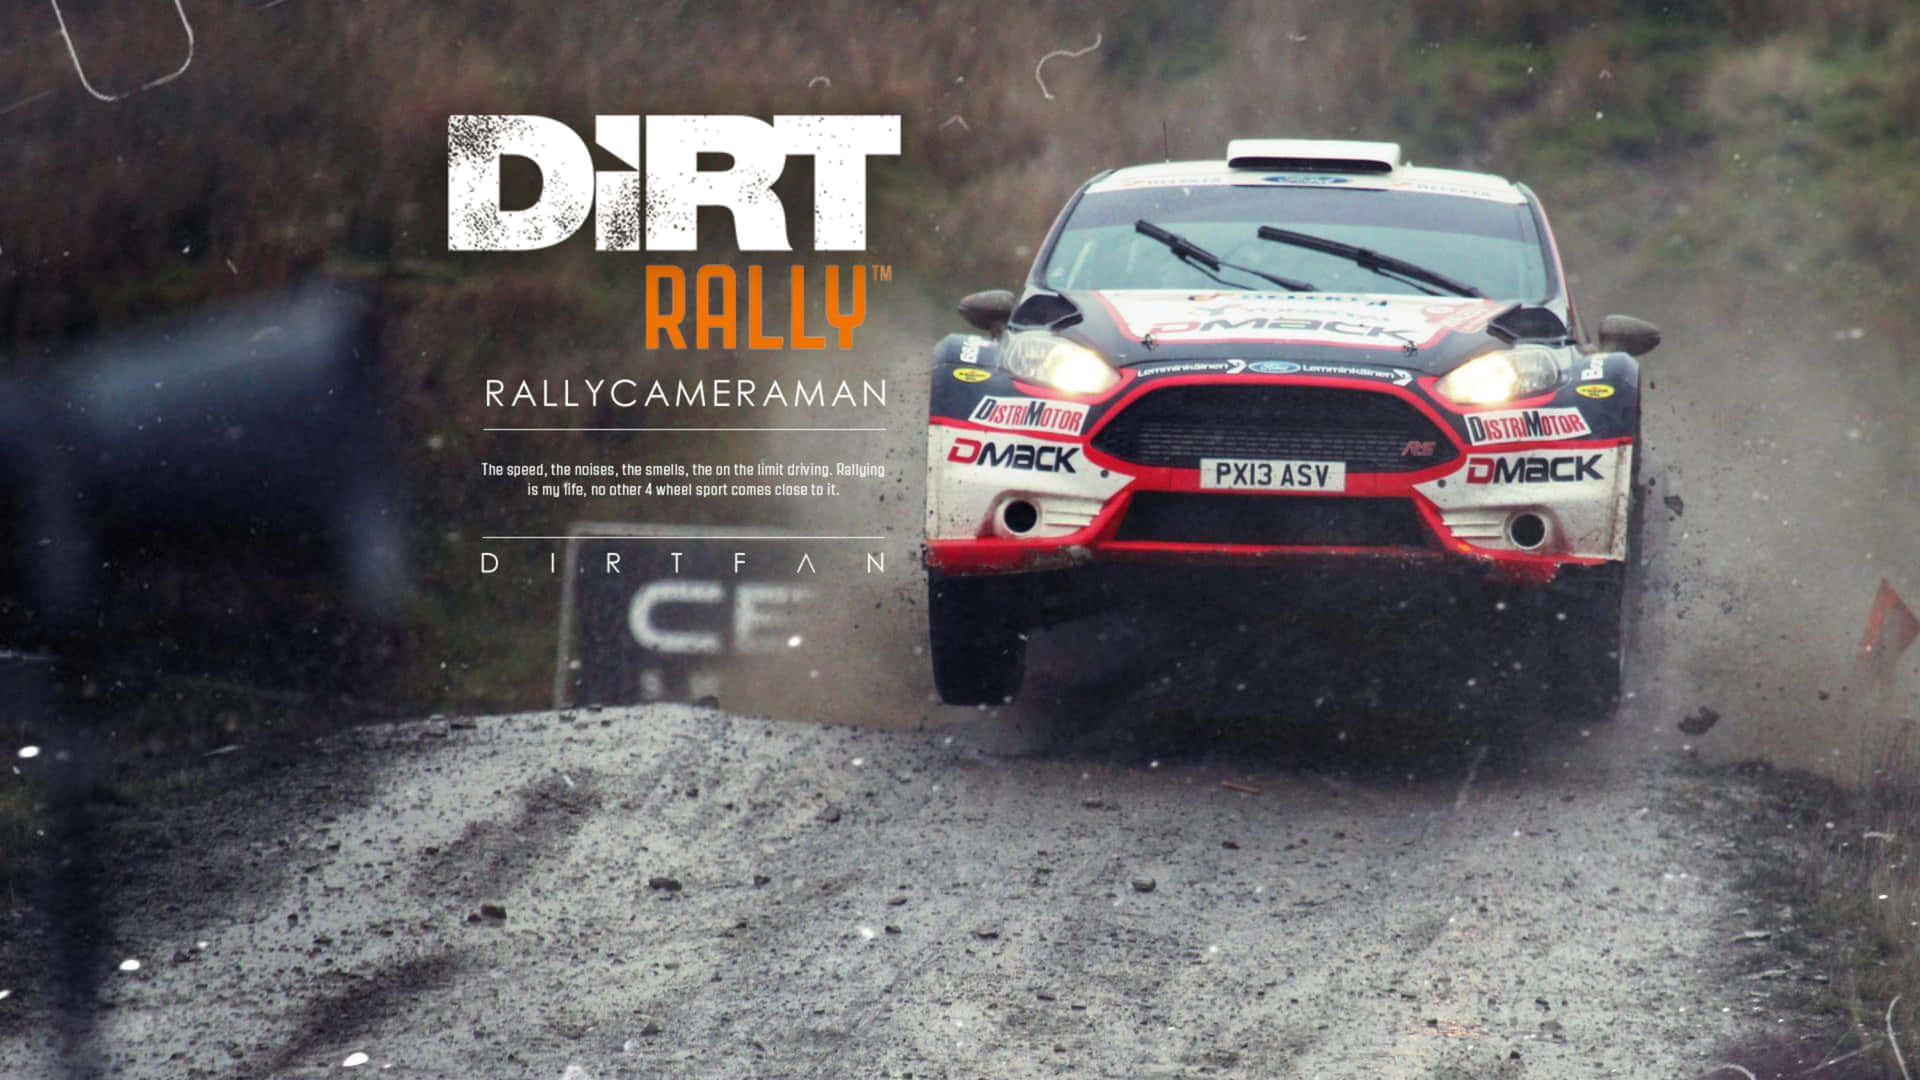 Velocitàed Adrenalina: Accetta La Sfida In 4k Con Dirt Rally